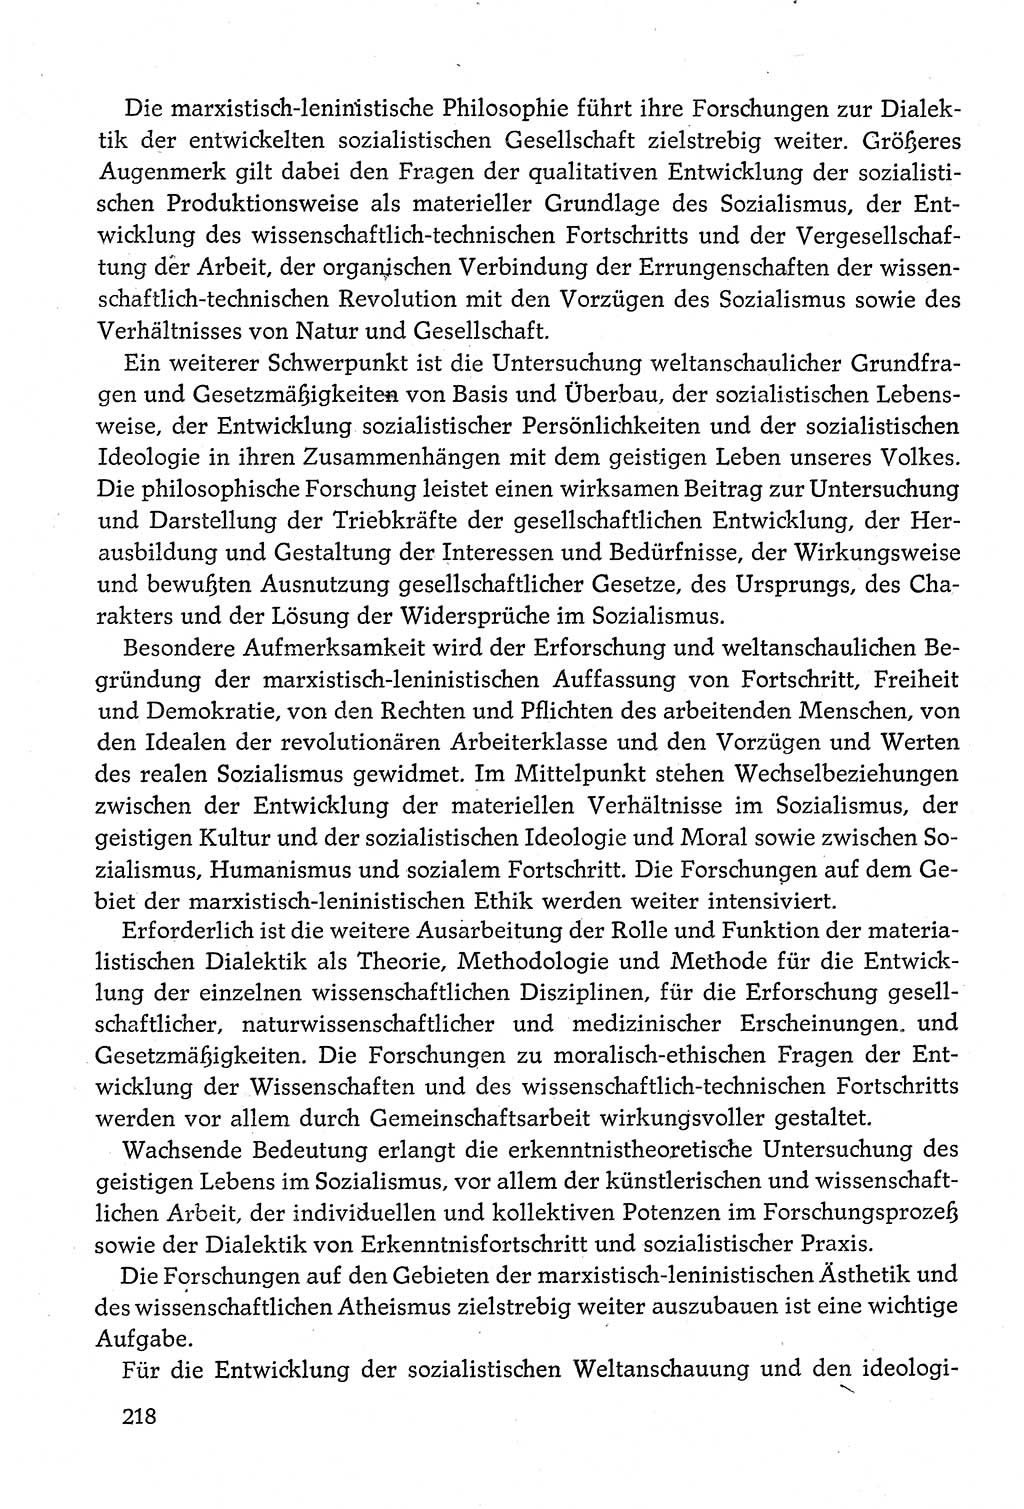 Dokumente der Sozialistischen Einheitspartei Deutschlands (SED) [Deutsche Demokratische Republik (DDR)] 1980-1981, Seite 218 (Dok. SED DDR 1980-1981, S. 218)